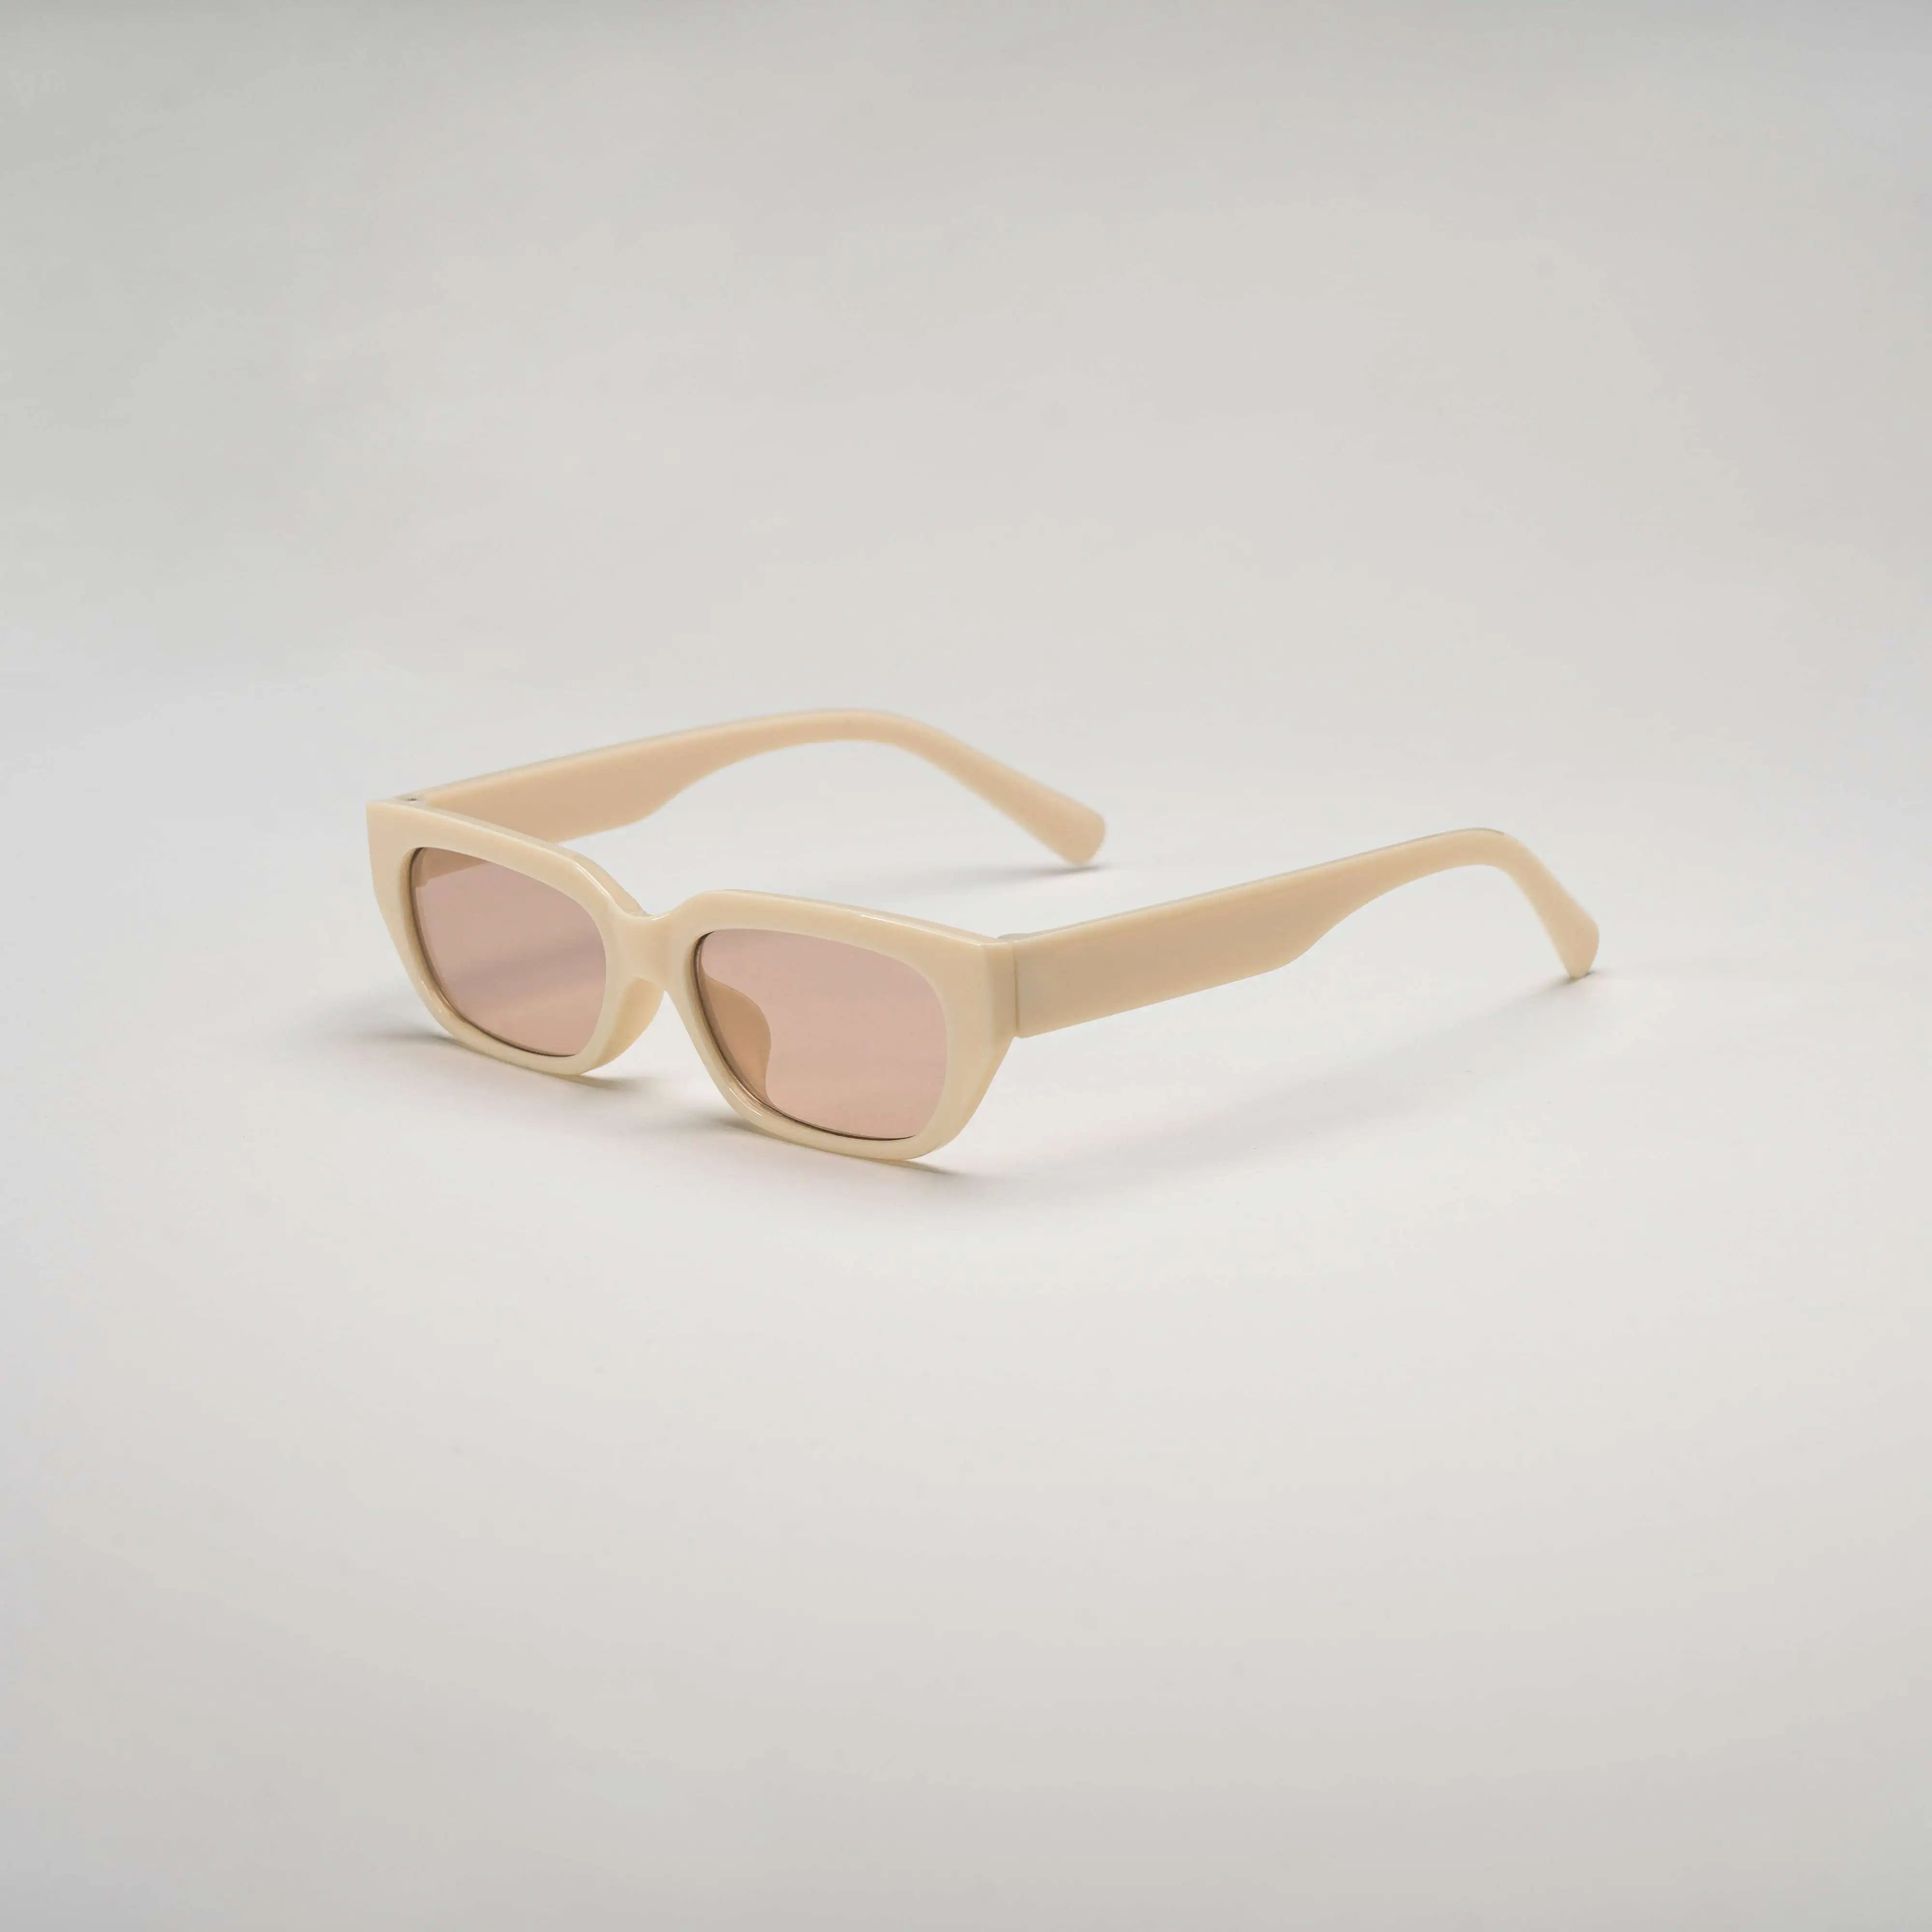 'Monterey' Retro Sunglasses in Beige